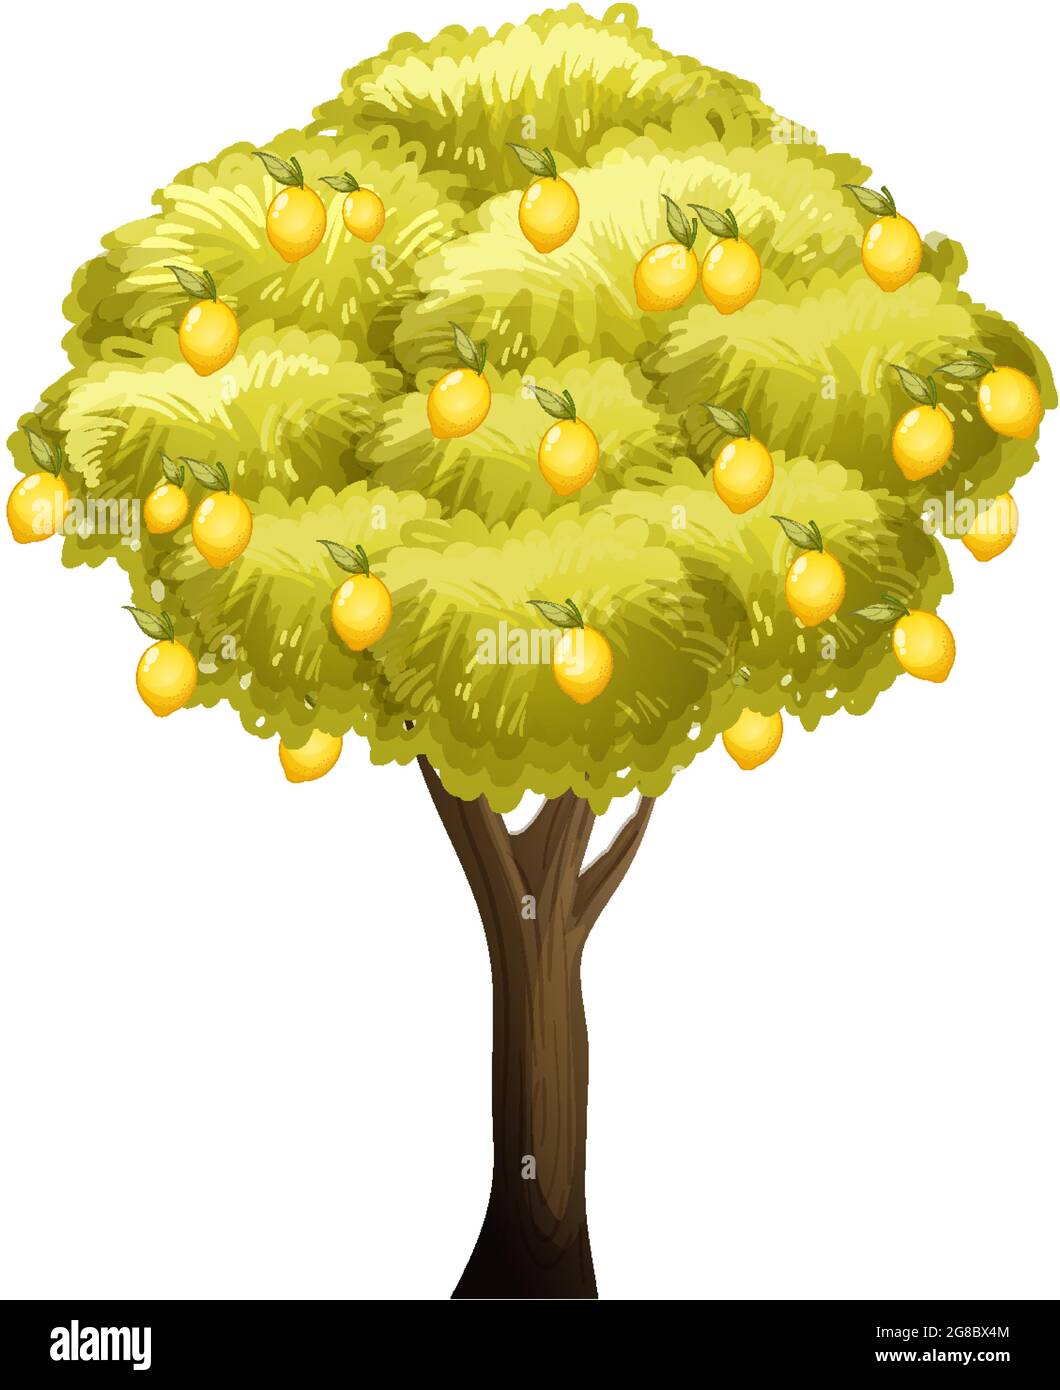 Lemon tree isolated on white background illustration Stock Vector Image ...